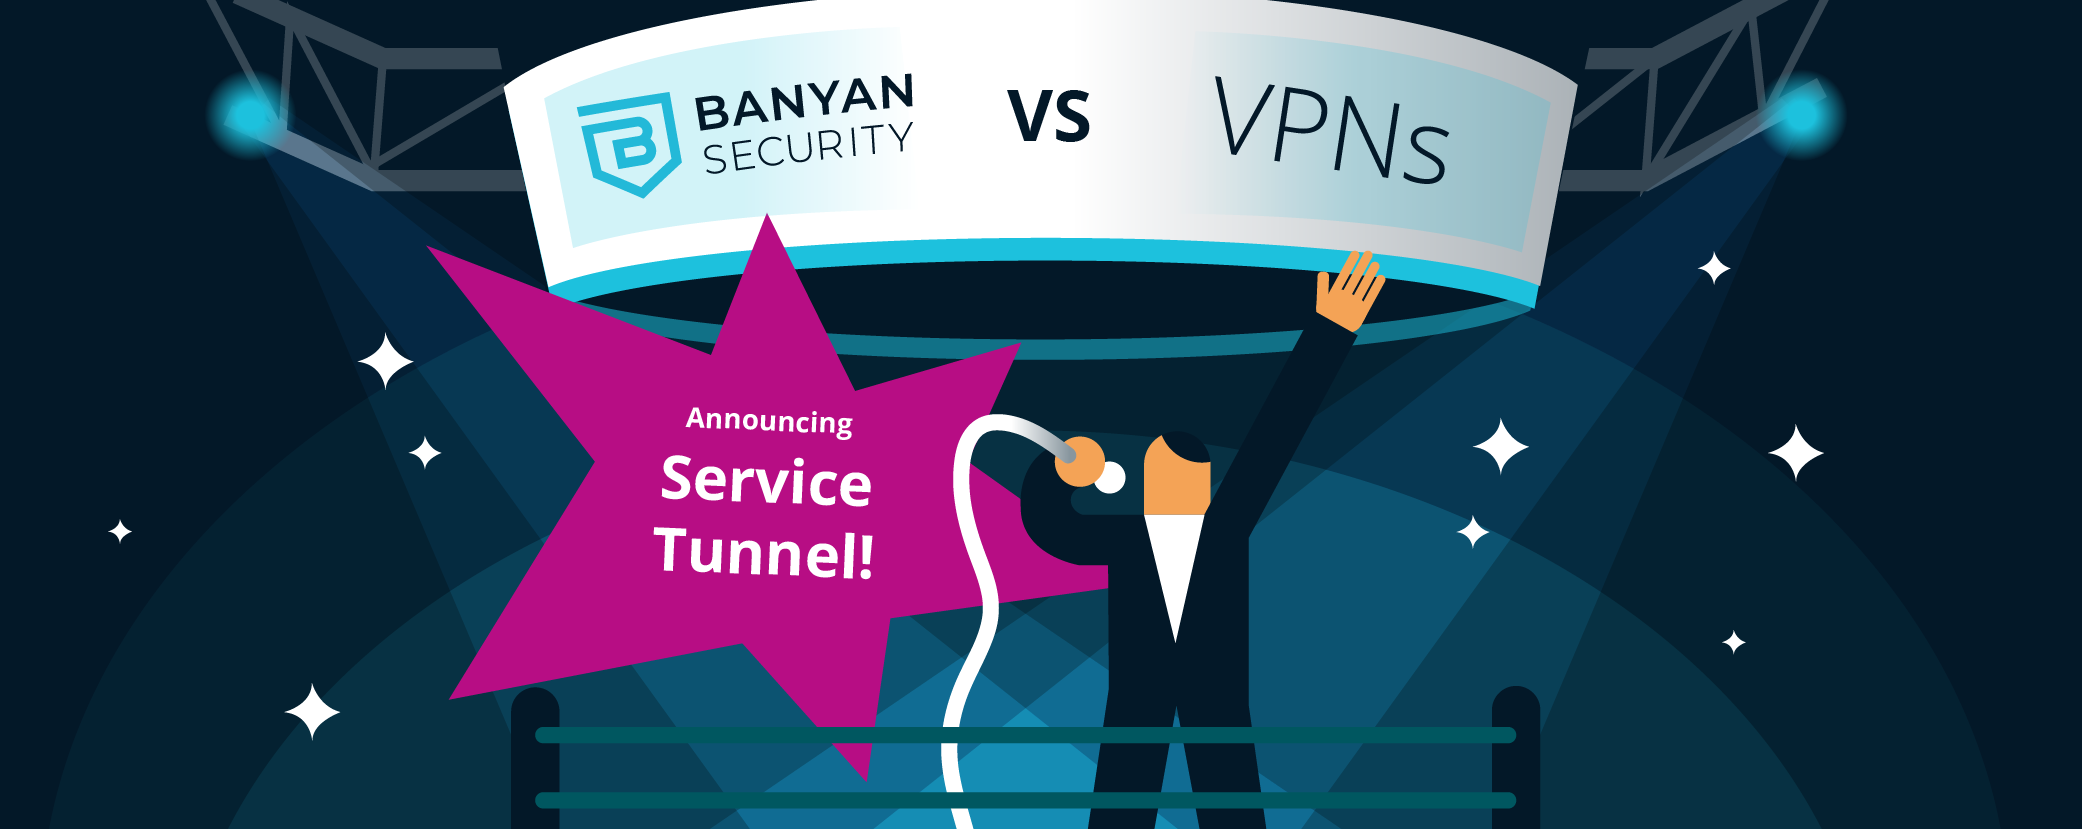 Service Tunnel vs VPN